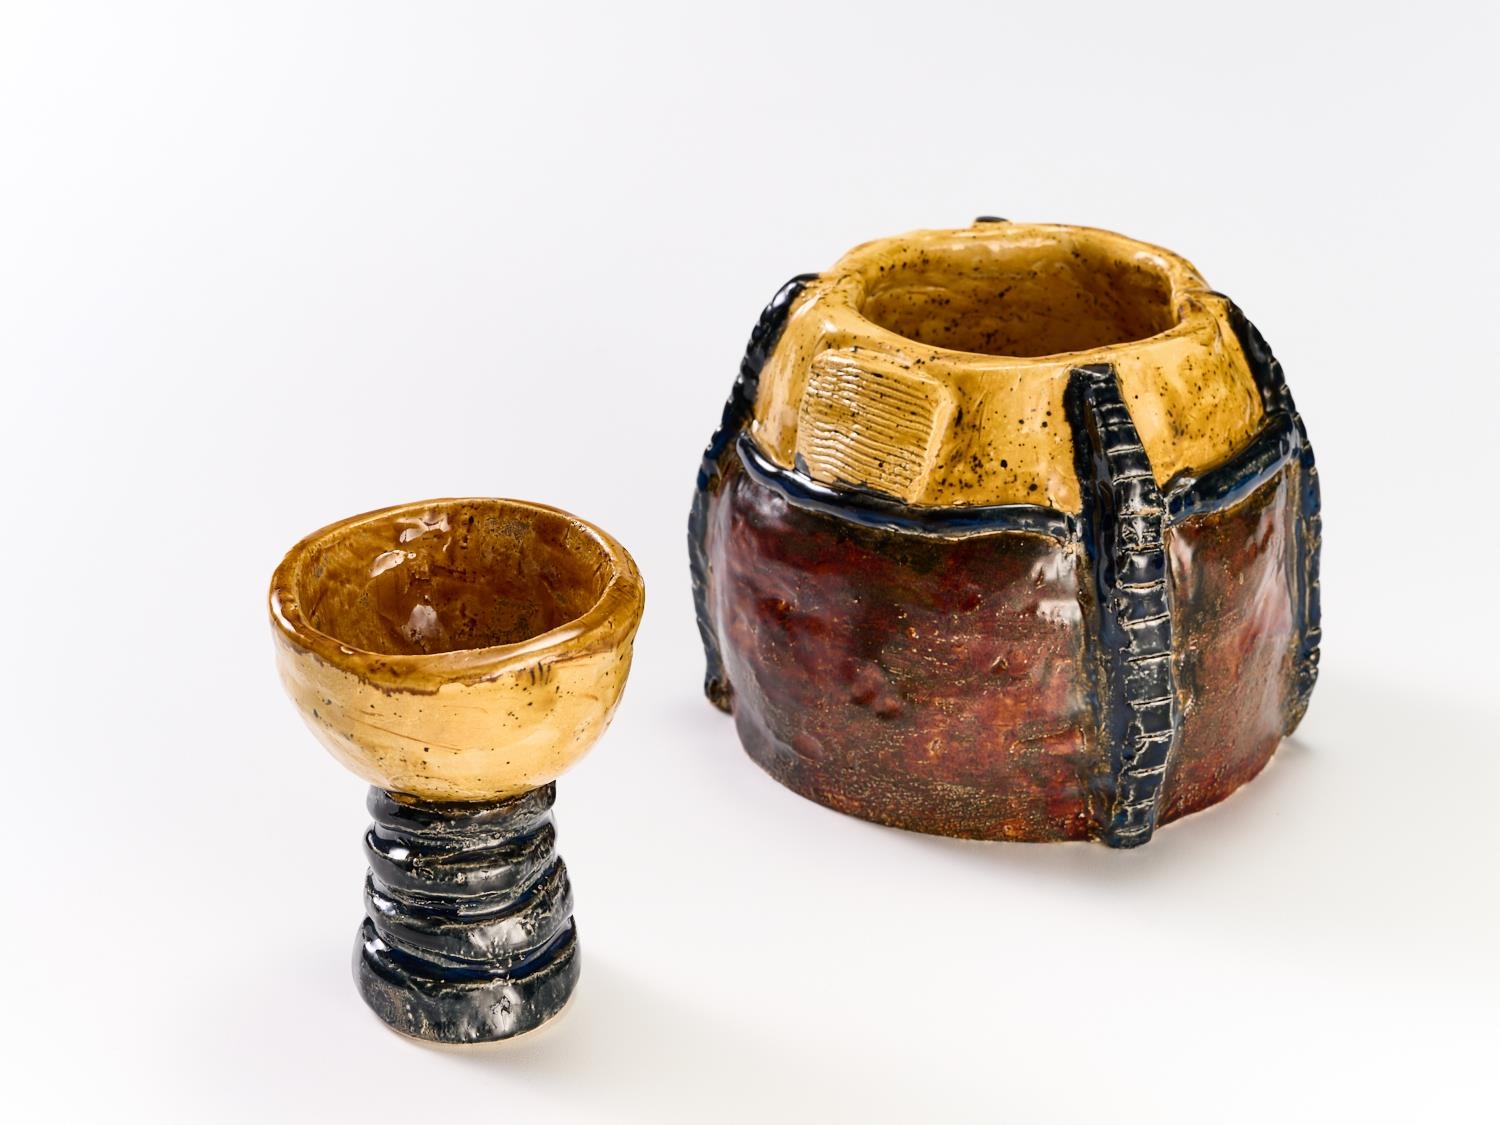 Keramik all inclusive_33 (Keramikmuseum Westerwald / Helge Articus)